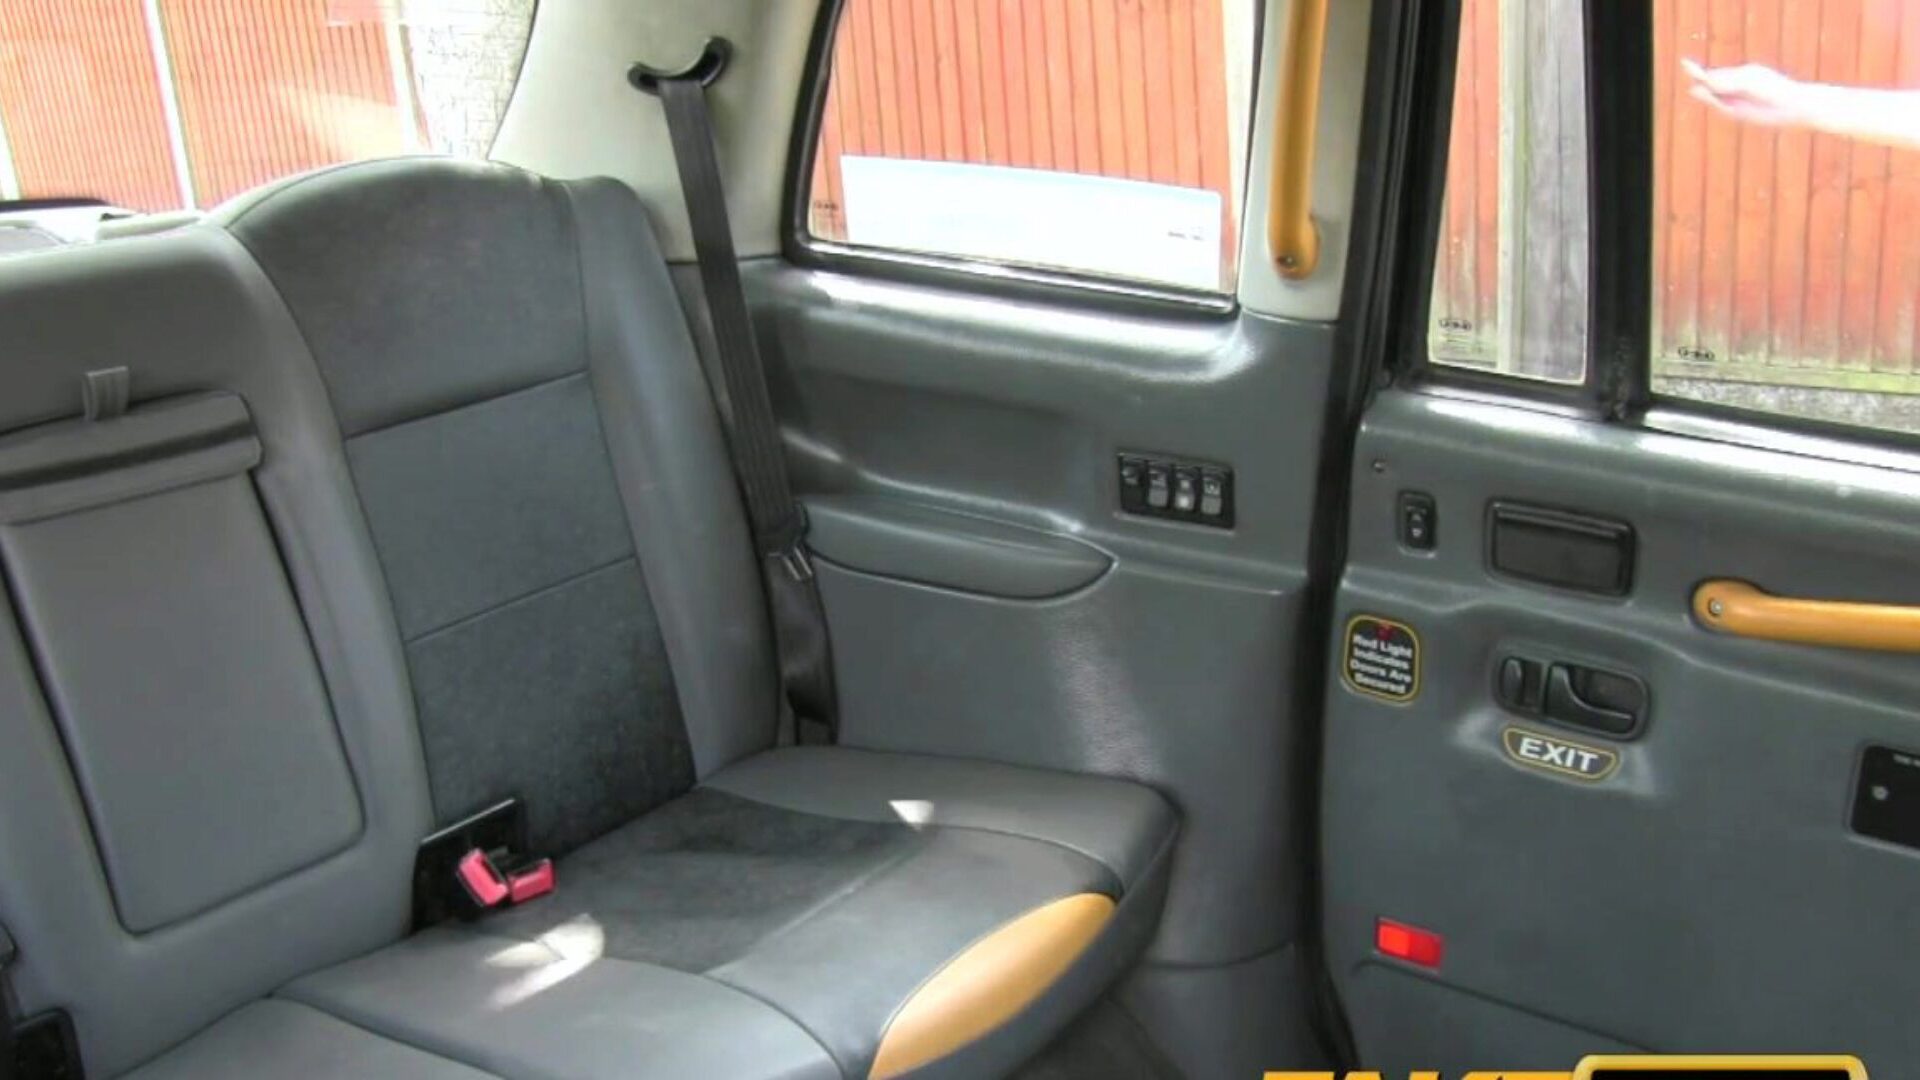 Фейковое такси, американская дама не может жить без траха в задницу